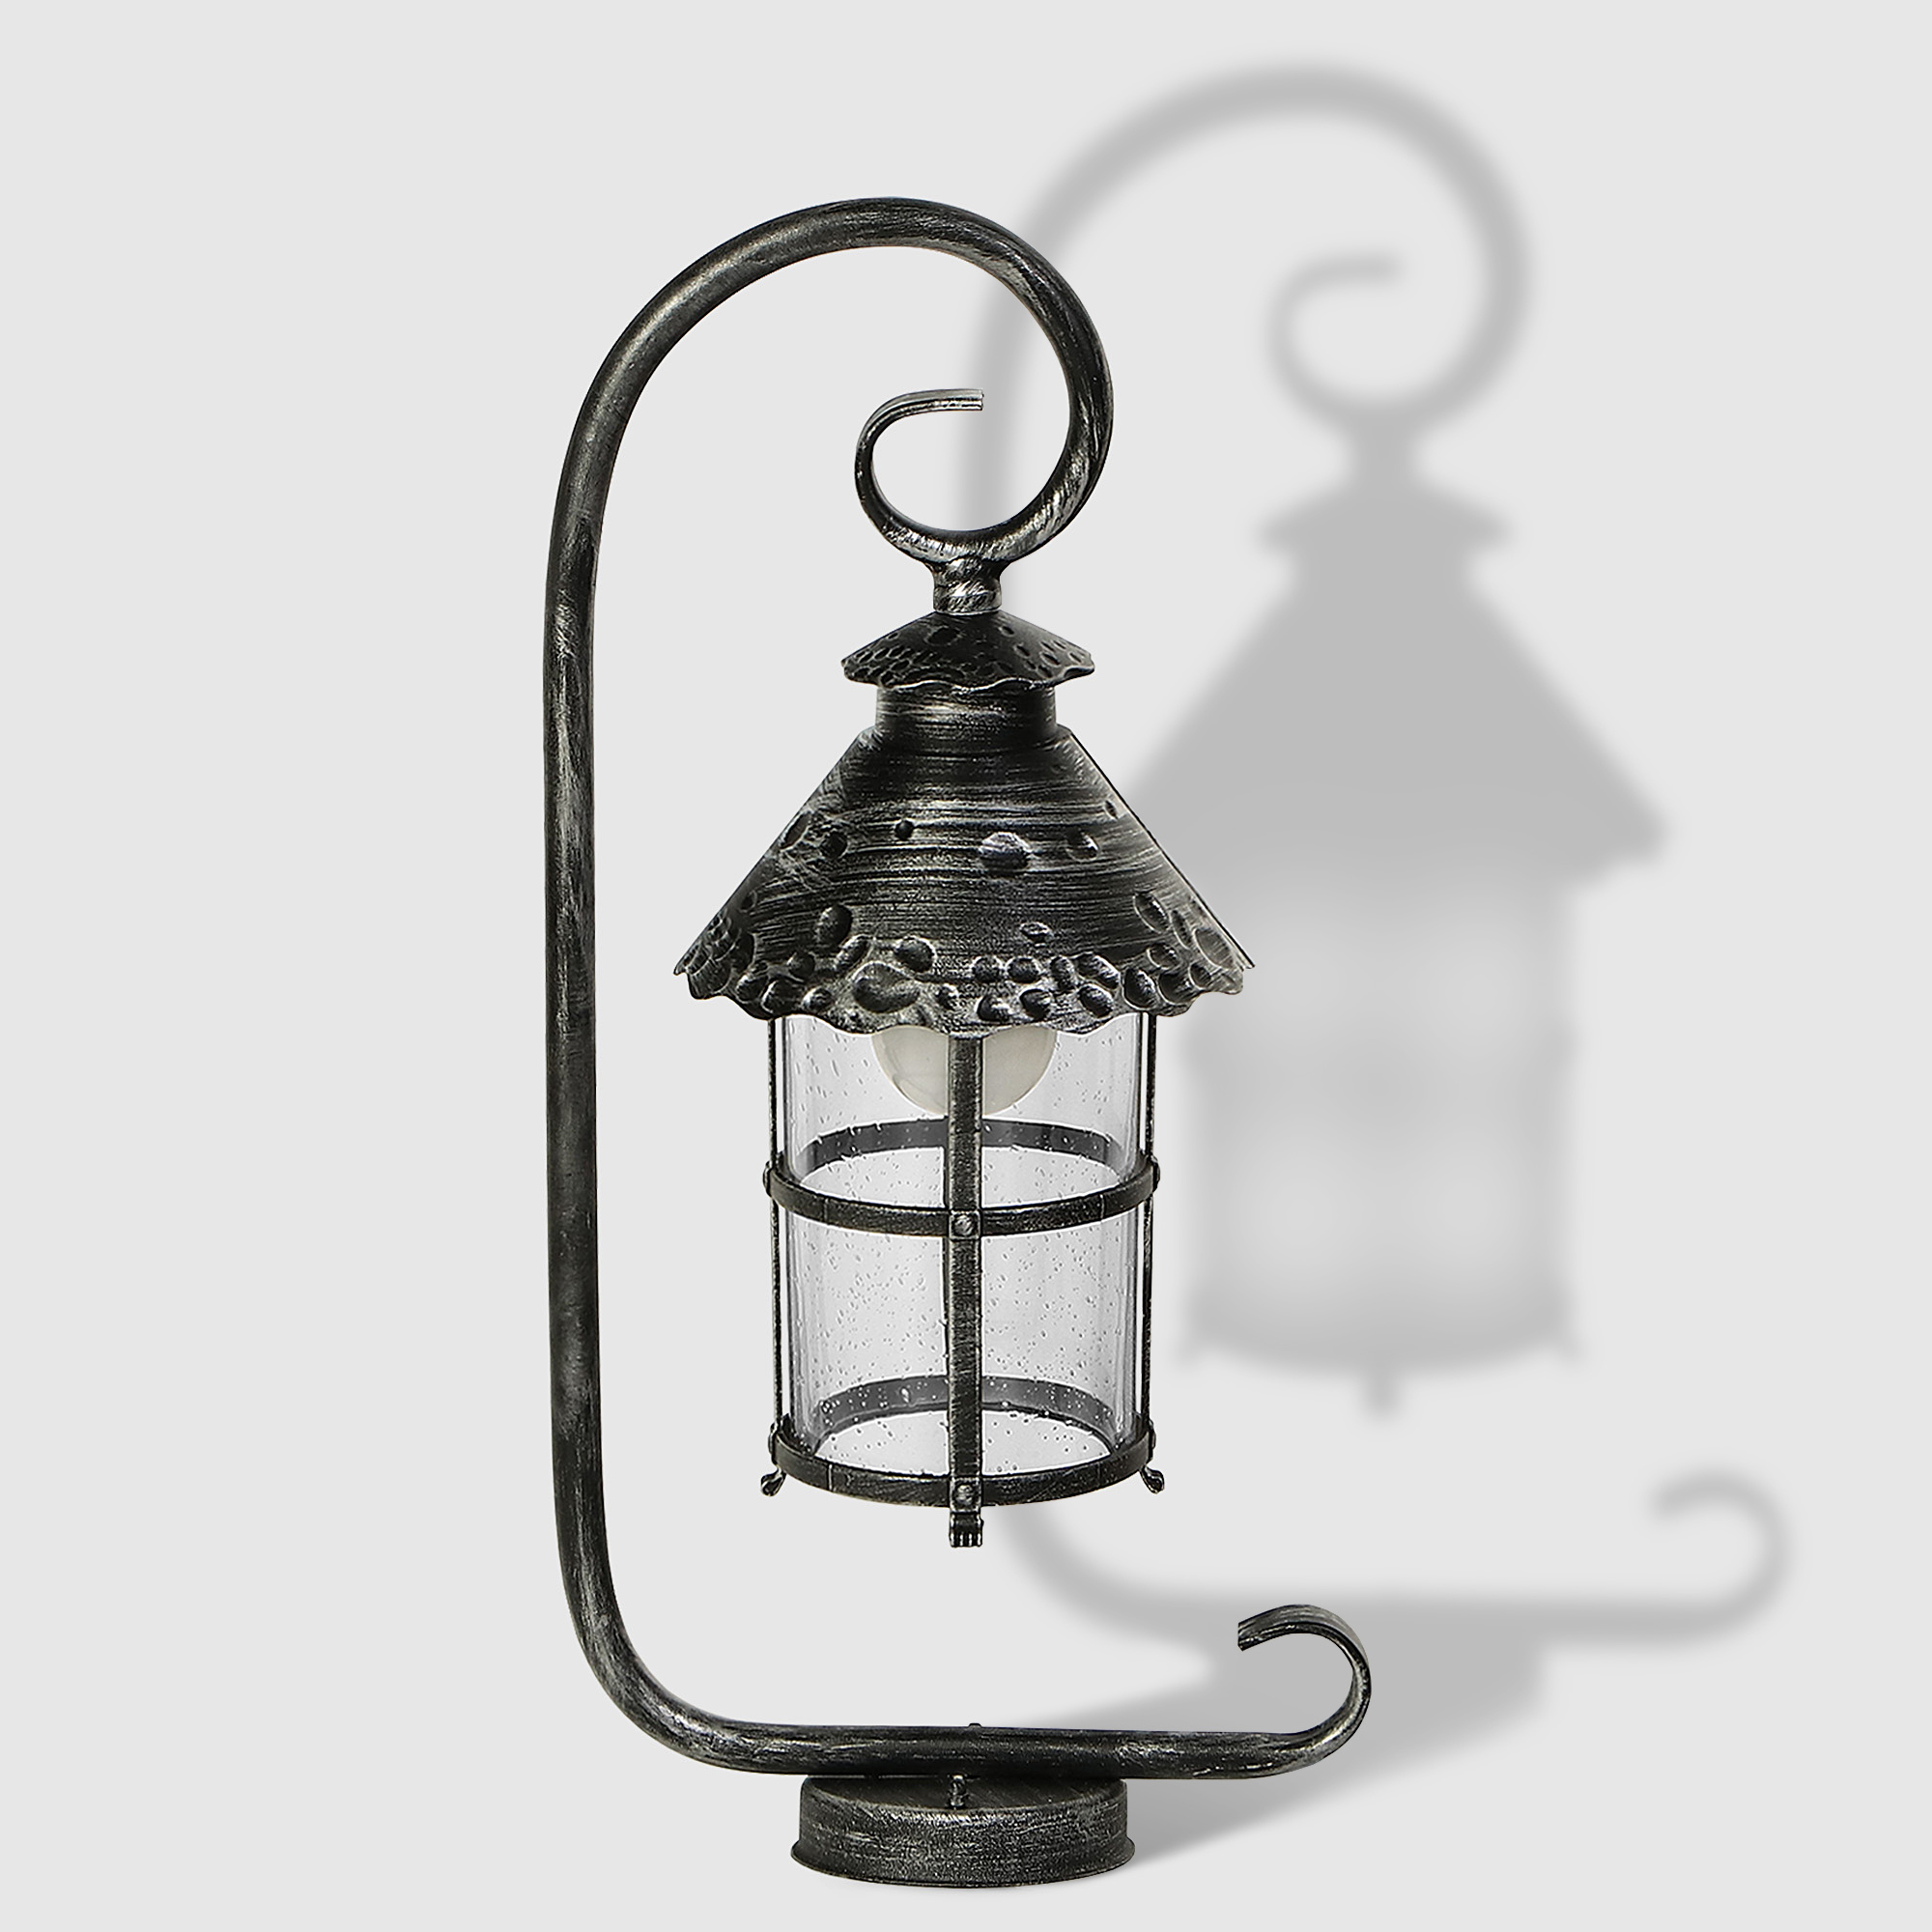 Светильник садовый Amber Lamp 8732B напольный IP23 E27 100Вт, чёрное серебро светильник iek нпп нпб 1201 овал 100вт ip54 иэк белый lnpp0 1201 1 100 k01